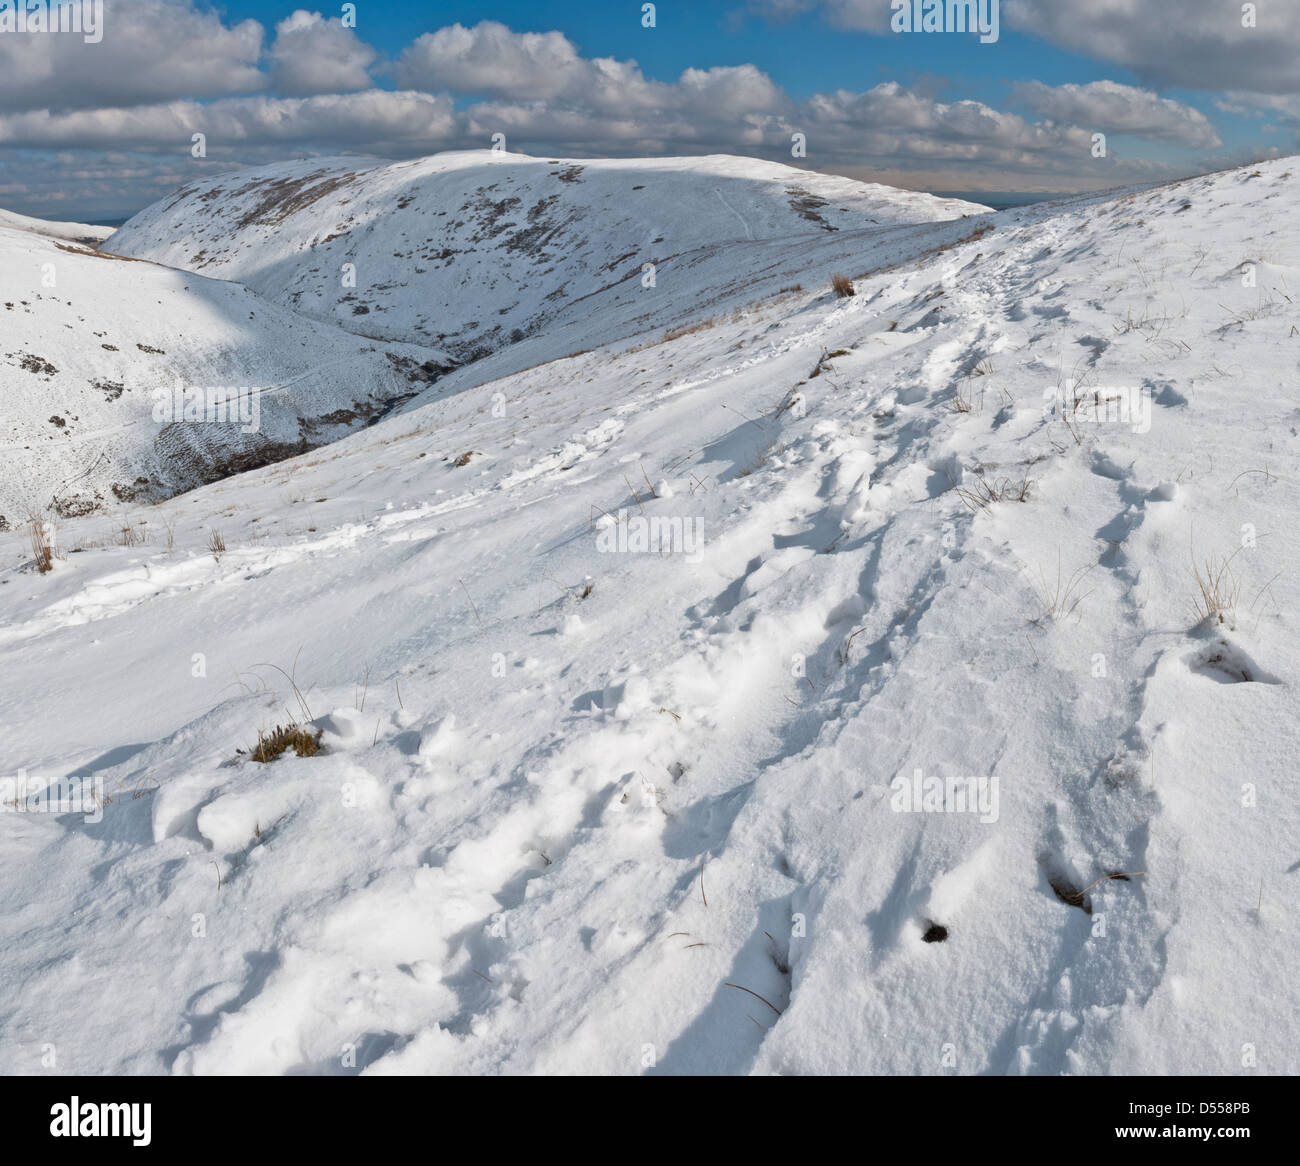 À l'égard Souter a chuté recouverts de neige en hiver, à partir de la balance est tombé, Blencathra, Lake District, Cumbria Banque D'Images